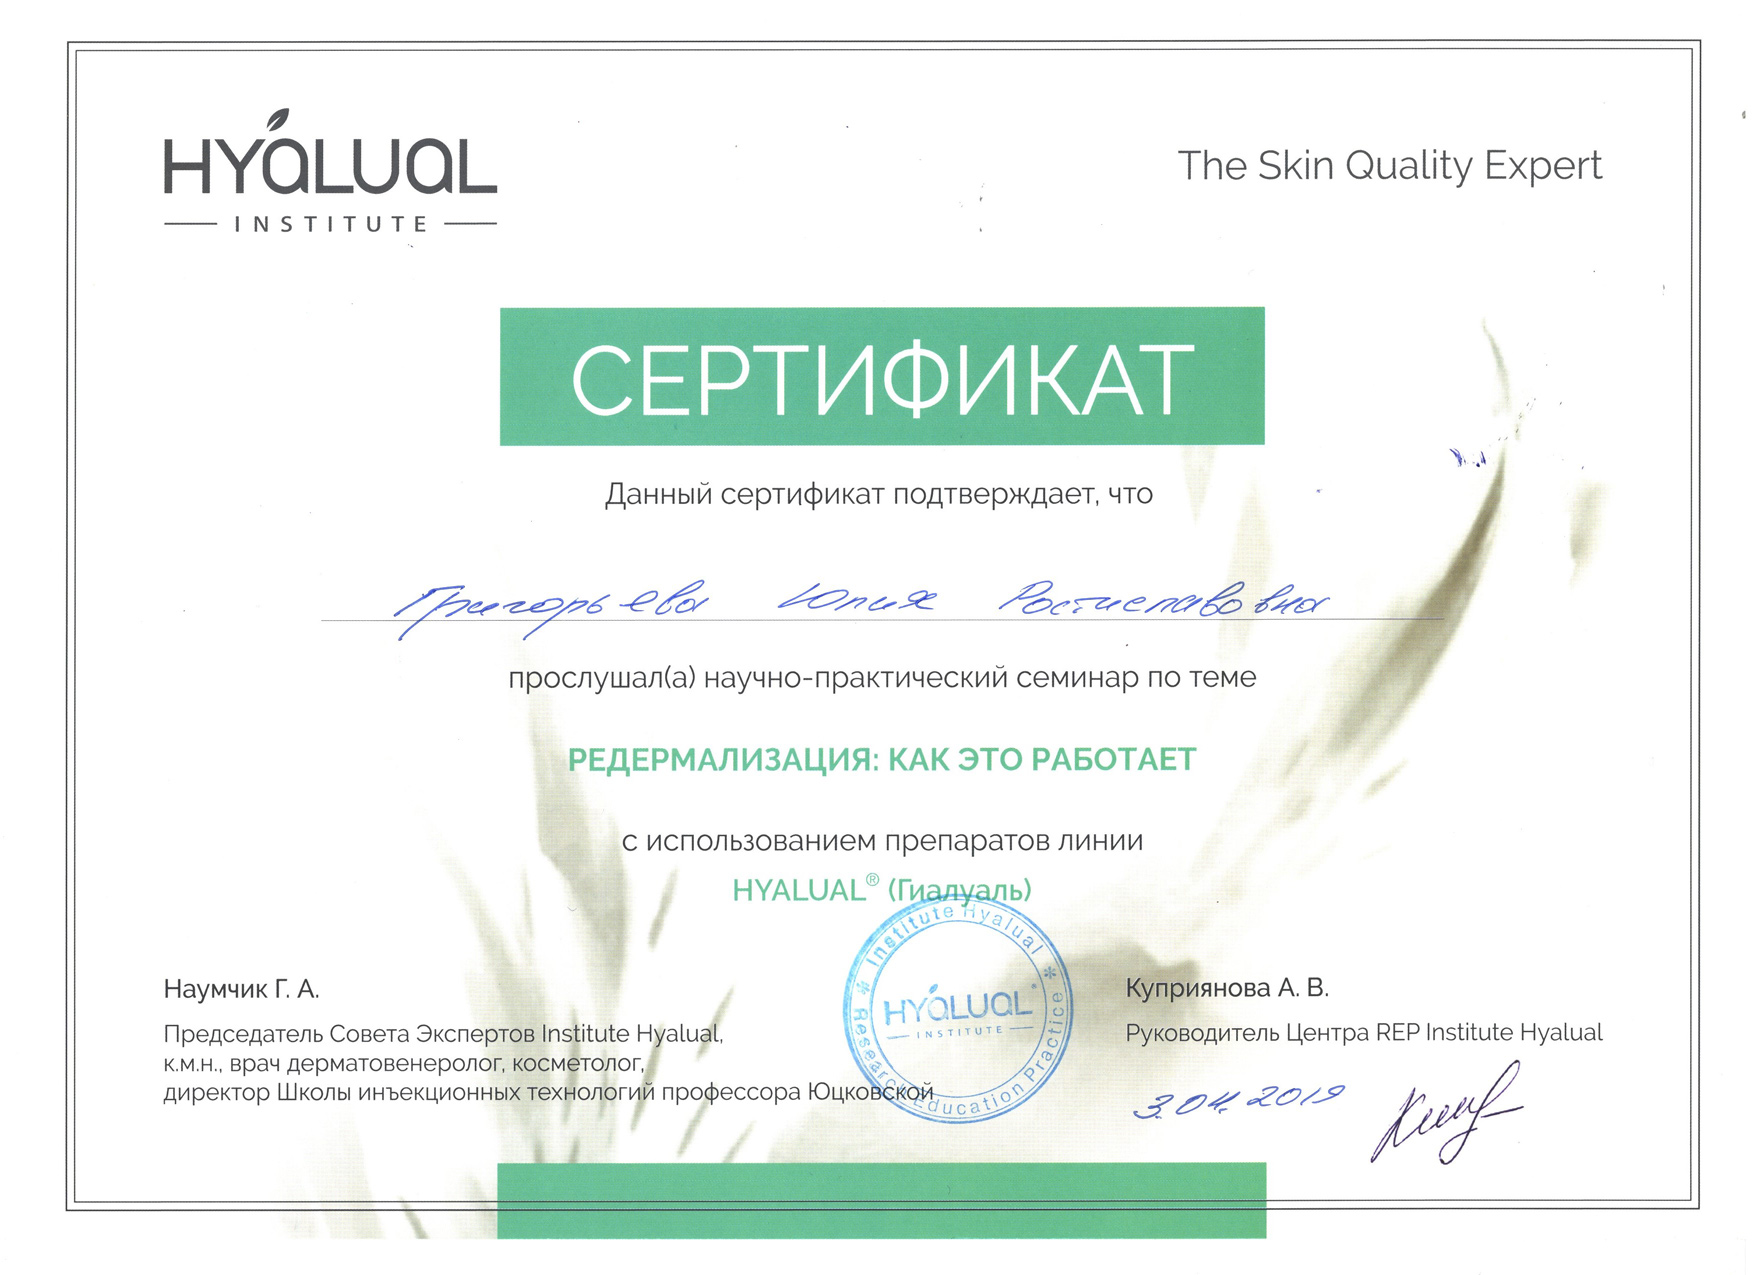 Сертификат — Семинар «Редермализация: как это работает». Григорьева Юлия Ростиславовна